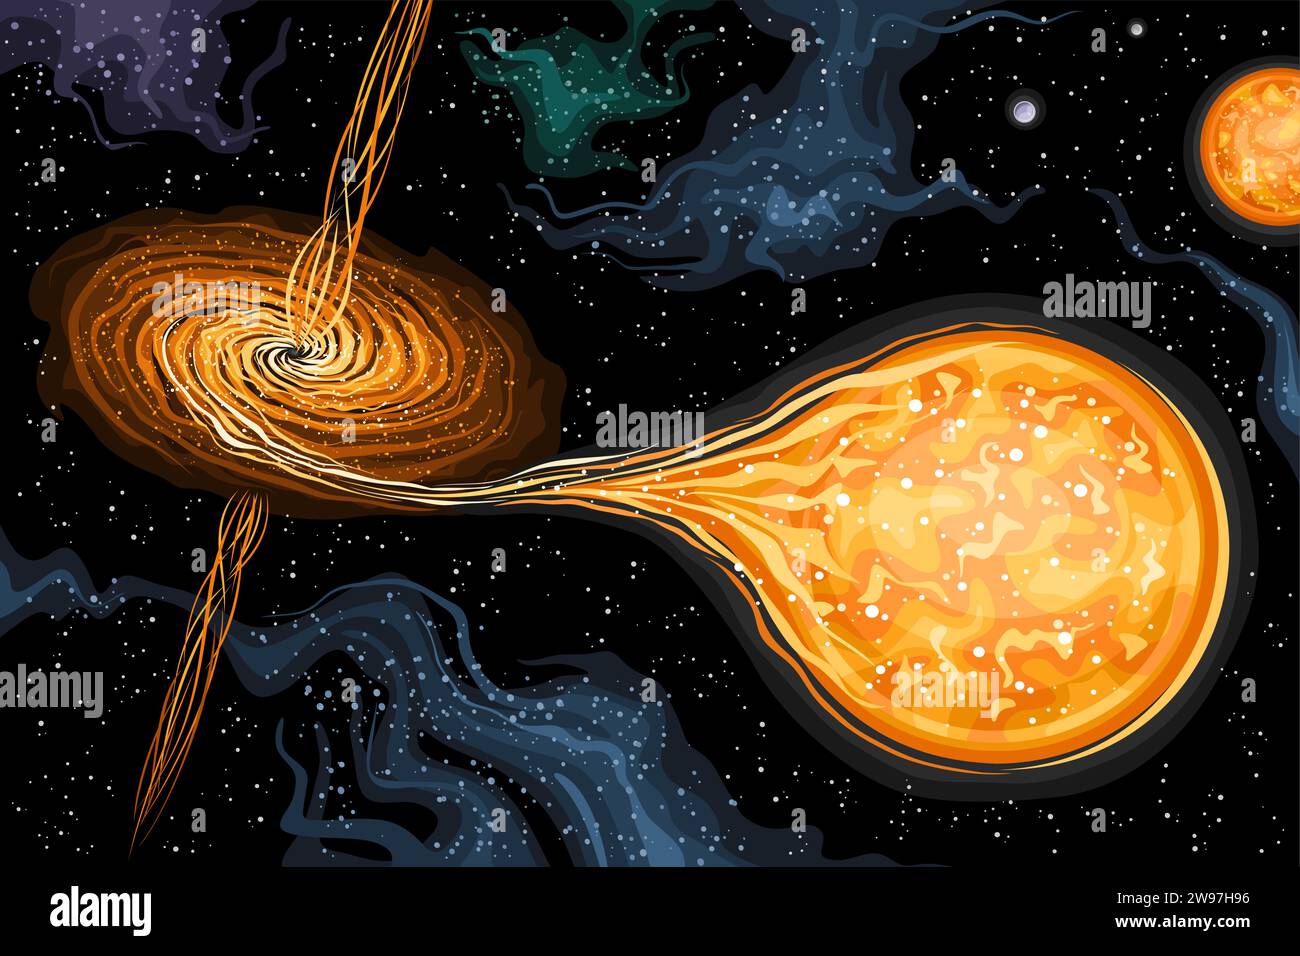 Vektor-Illustration von Black Hole, astronomisches horizontales Poster mit drehendem Schwarzen Loch, das riesige außerirdische Sterne im tiefen Raum verschlingt, dekoriert Stock Vektor